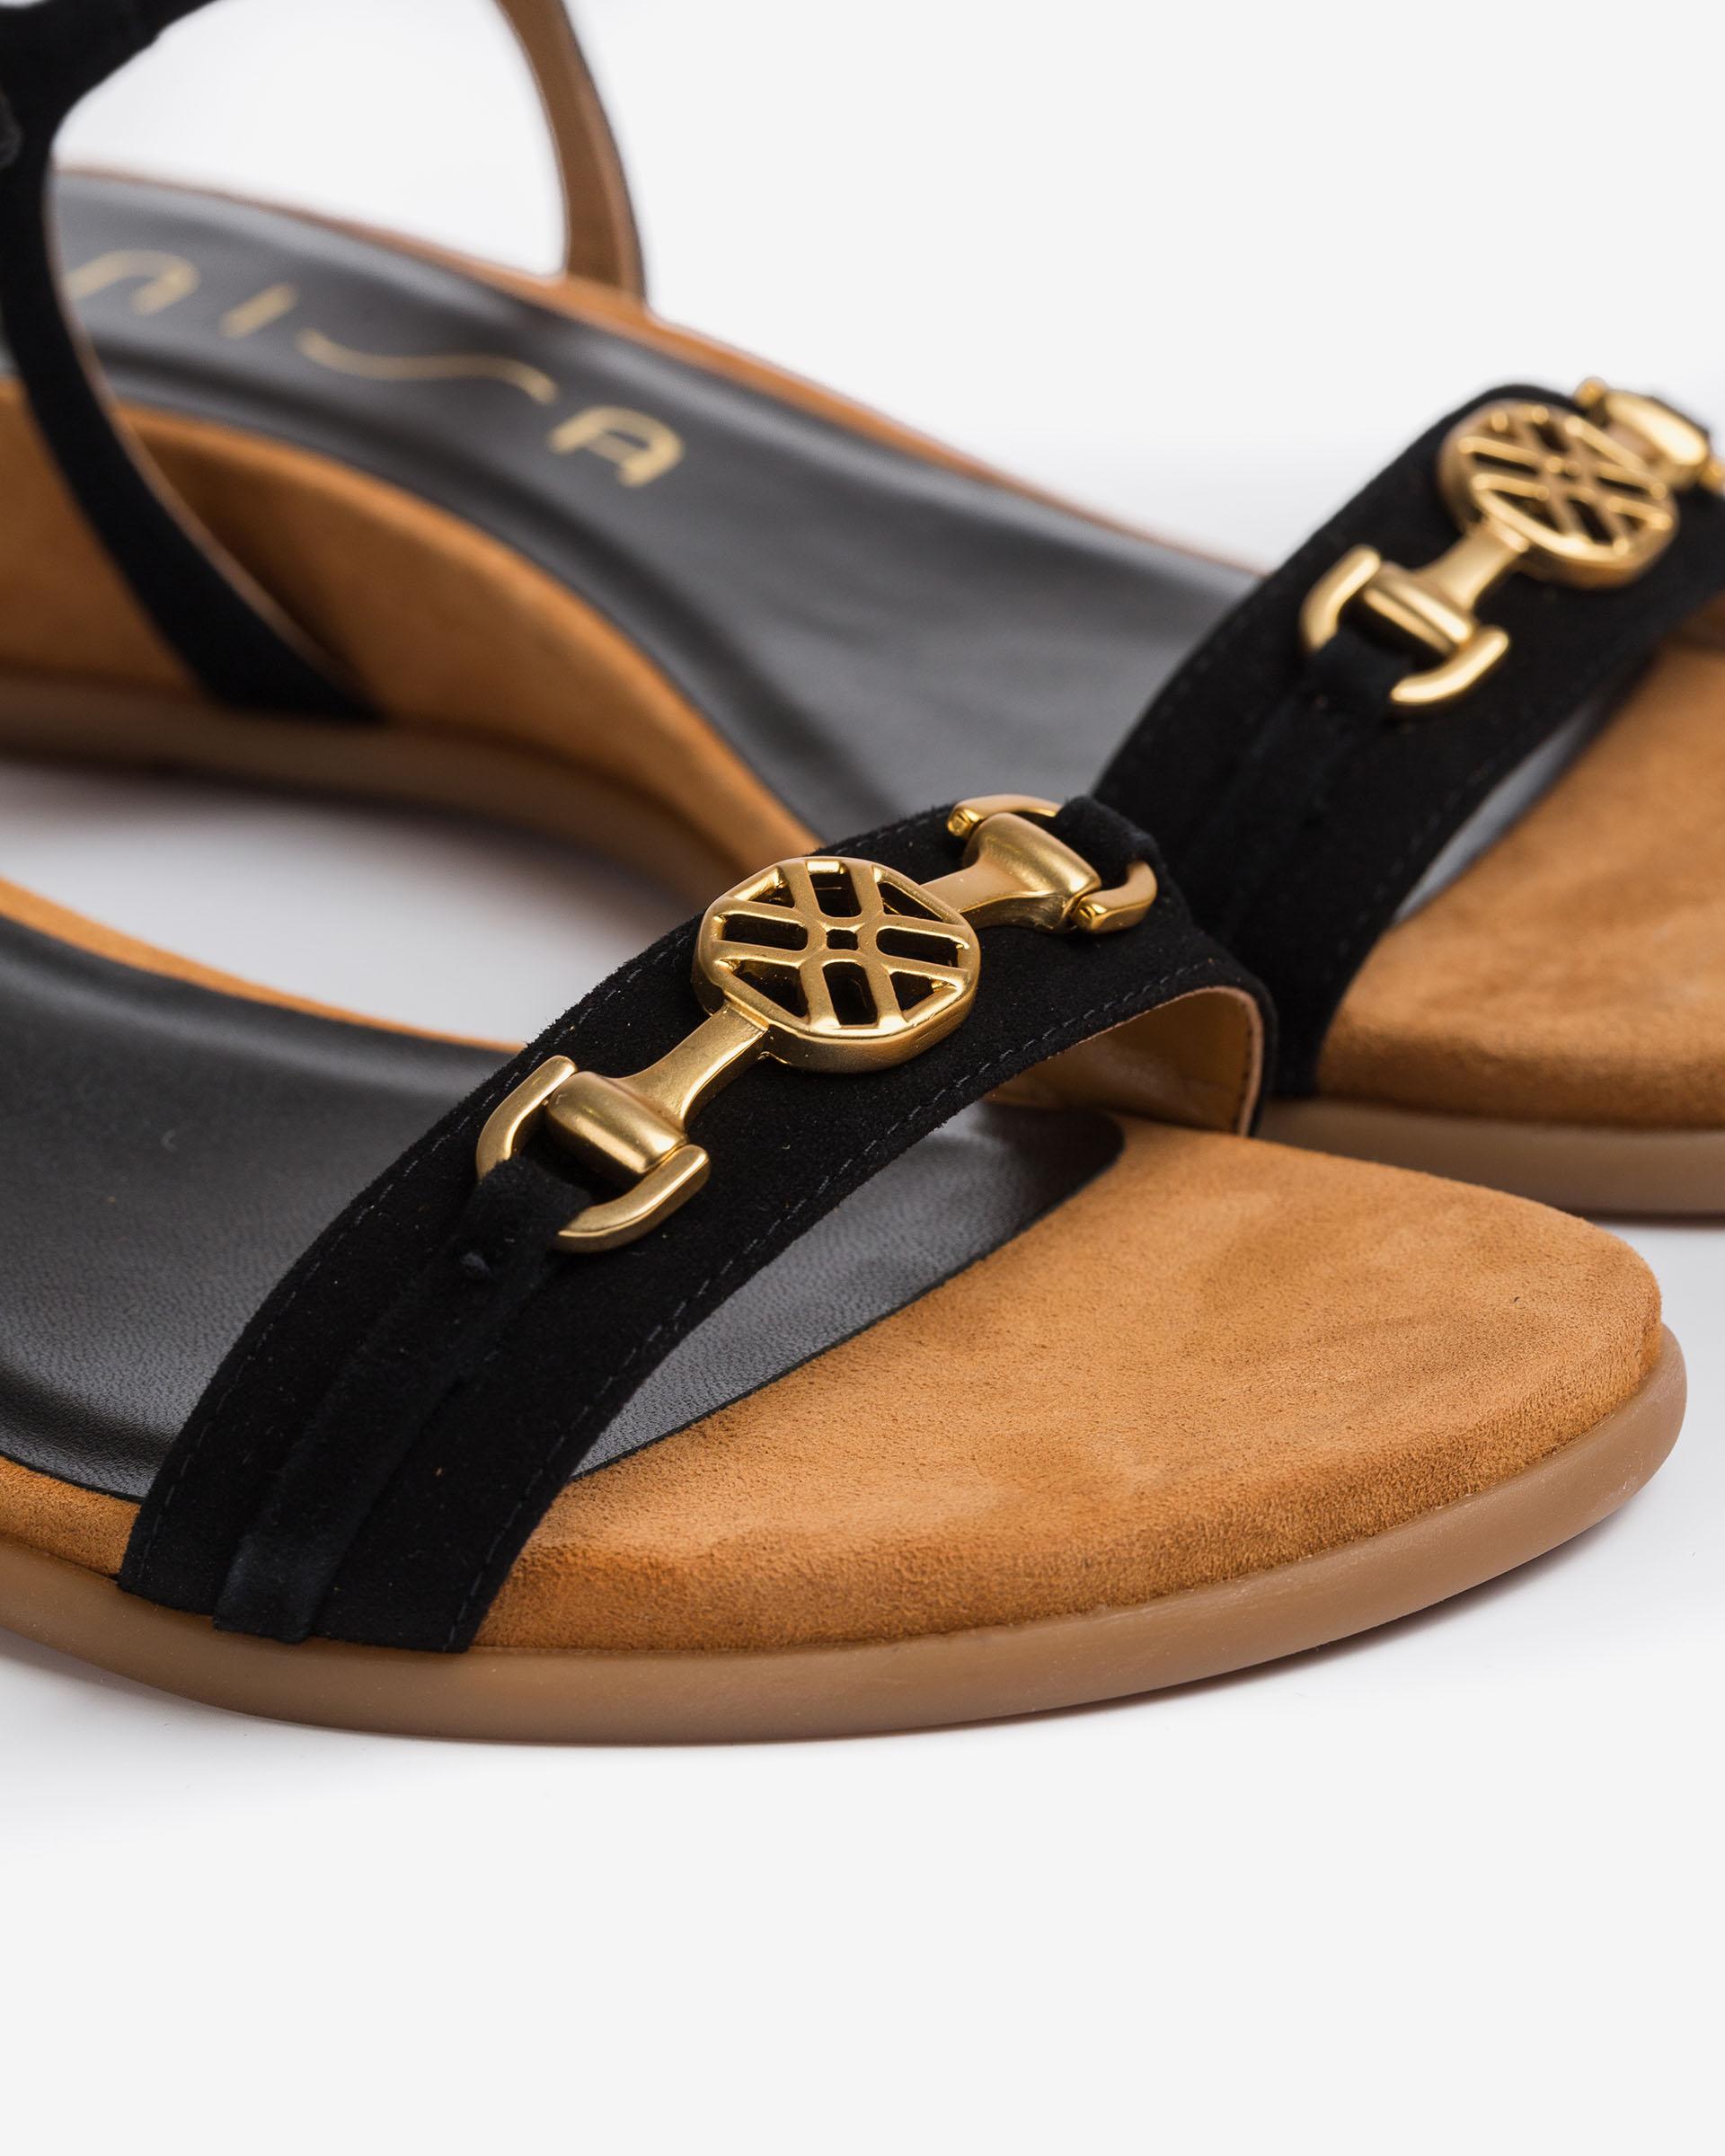 UNISA Thong sandals with monogram detail BENAFER_KS 2